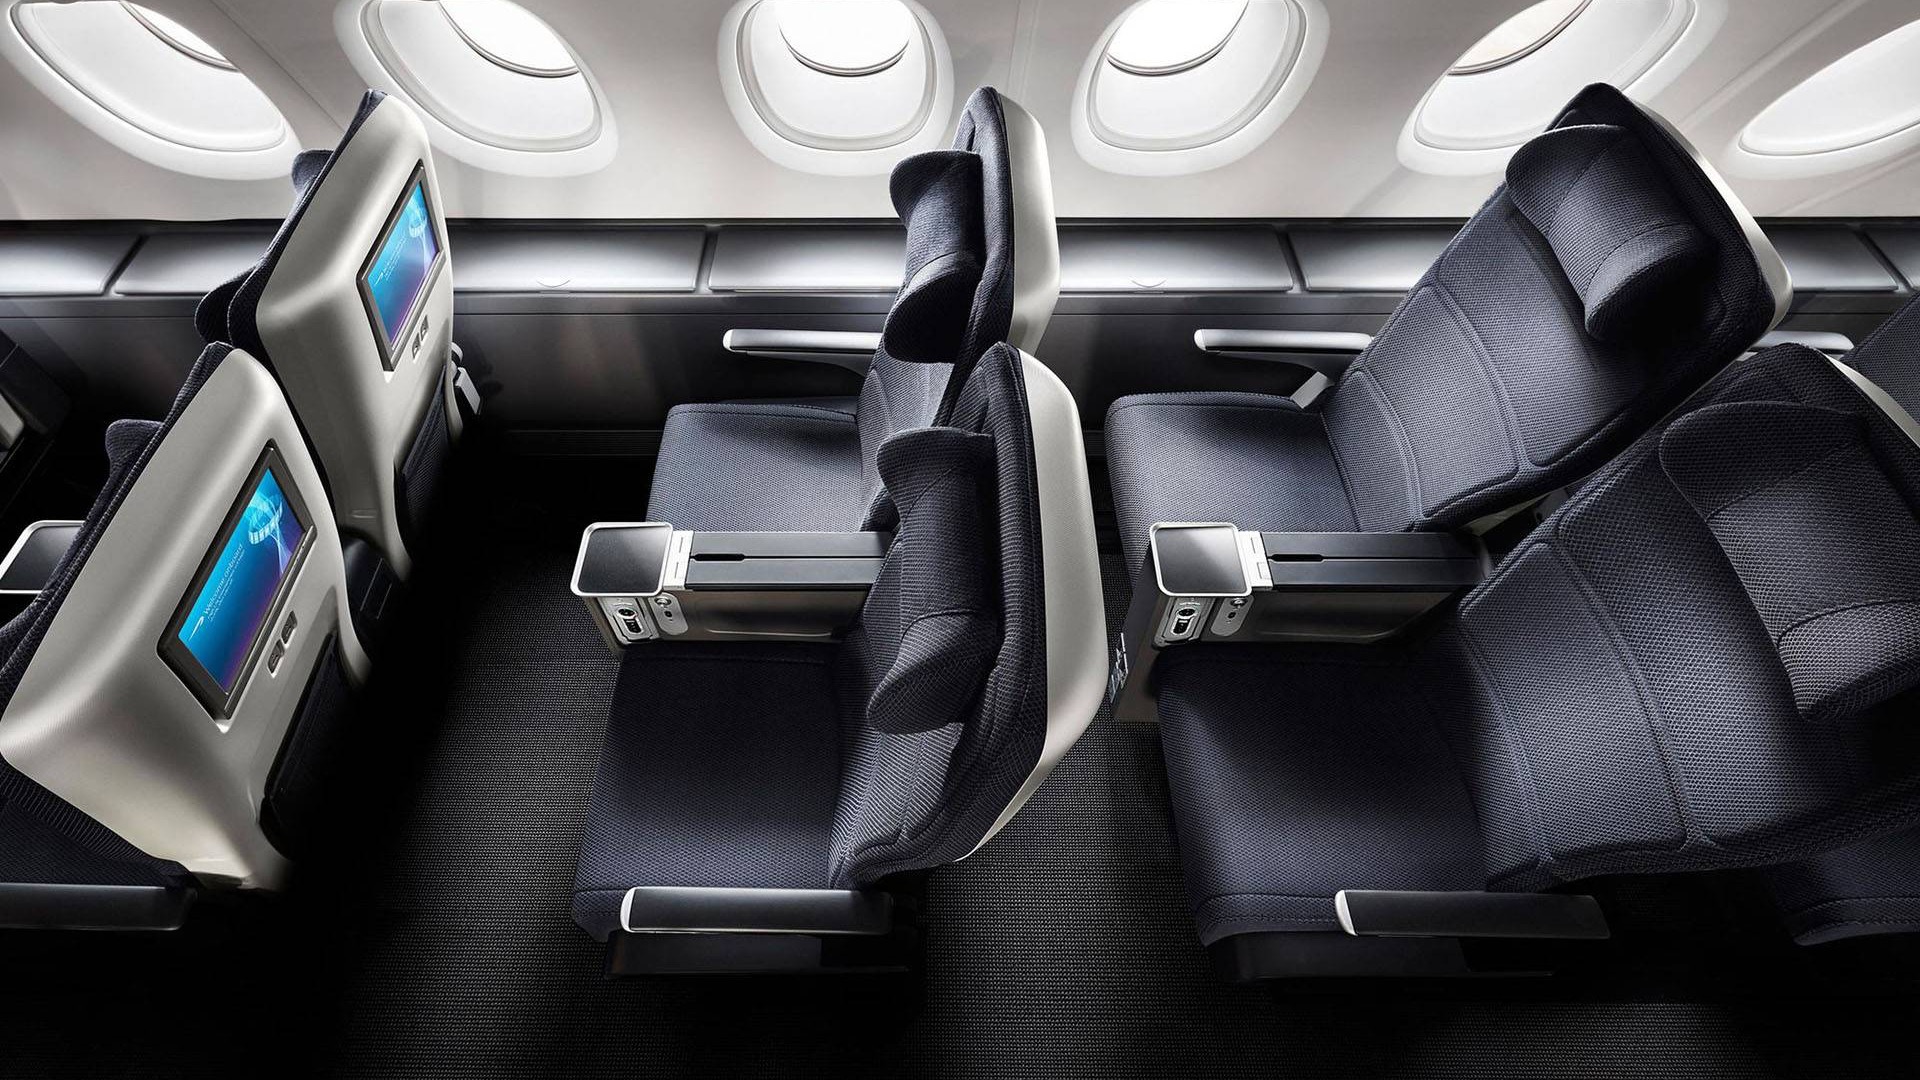 Review Of British Airways Premium Economy World Traveller Plus